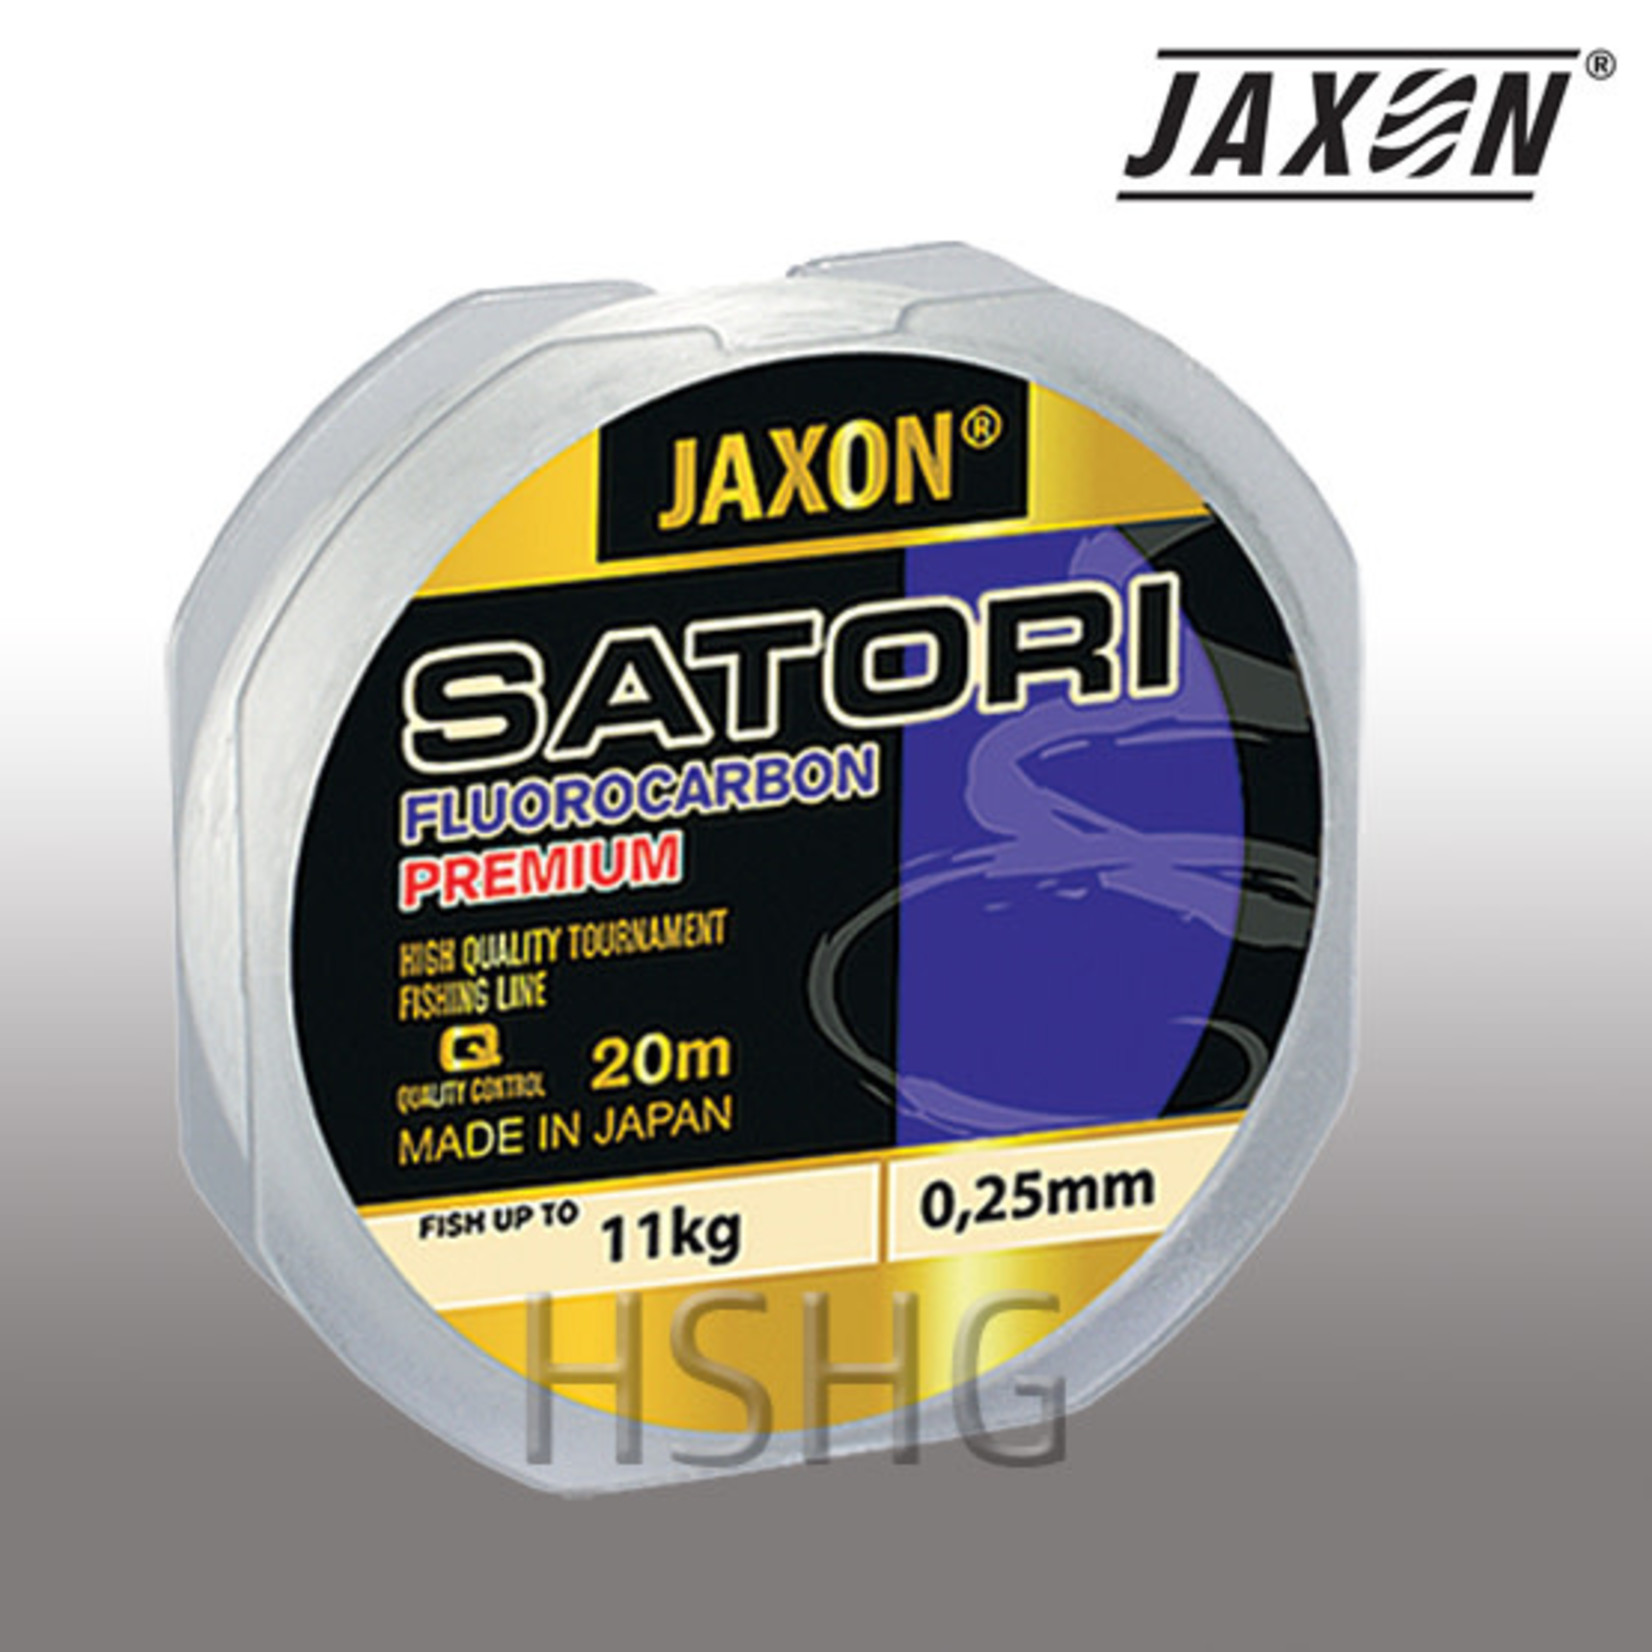 Jaxon Fluorocarbon Jaxon Satori premium nylon vislijn